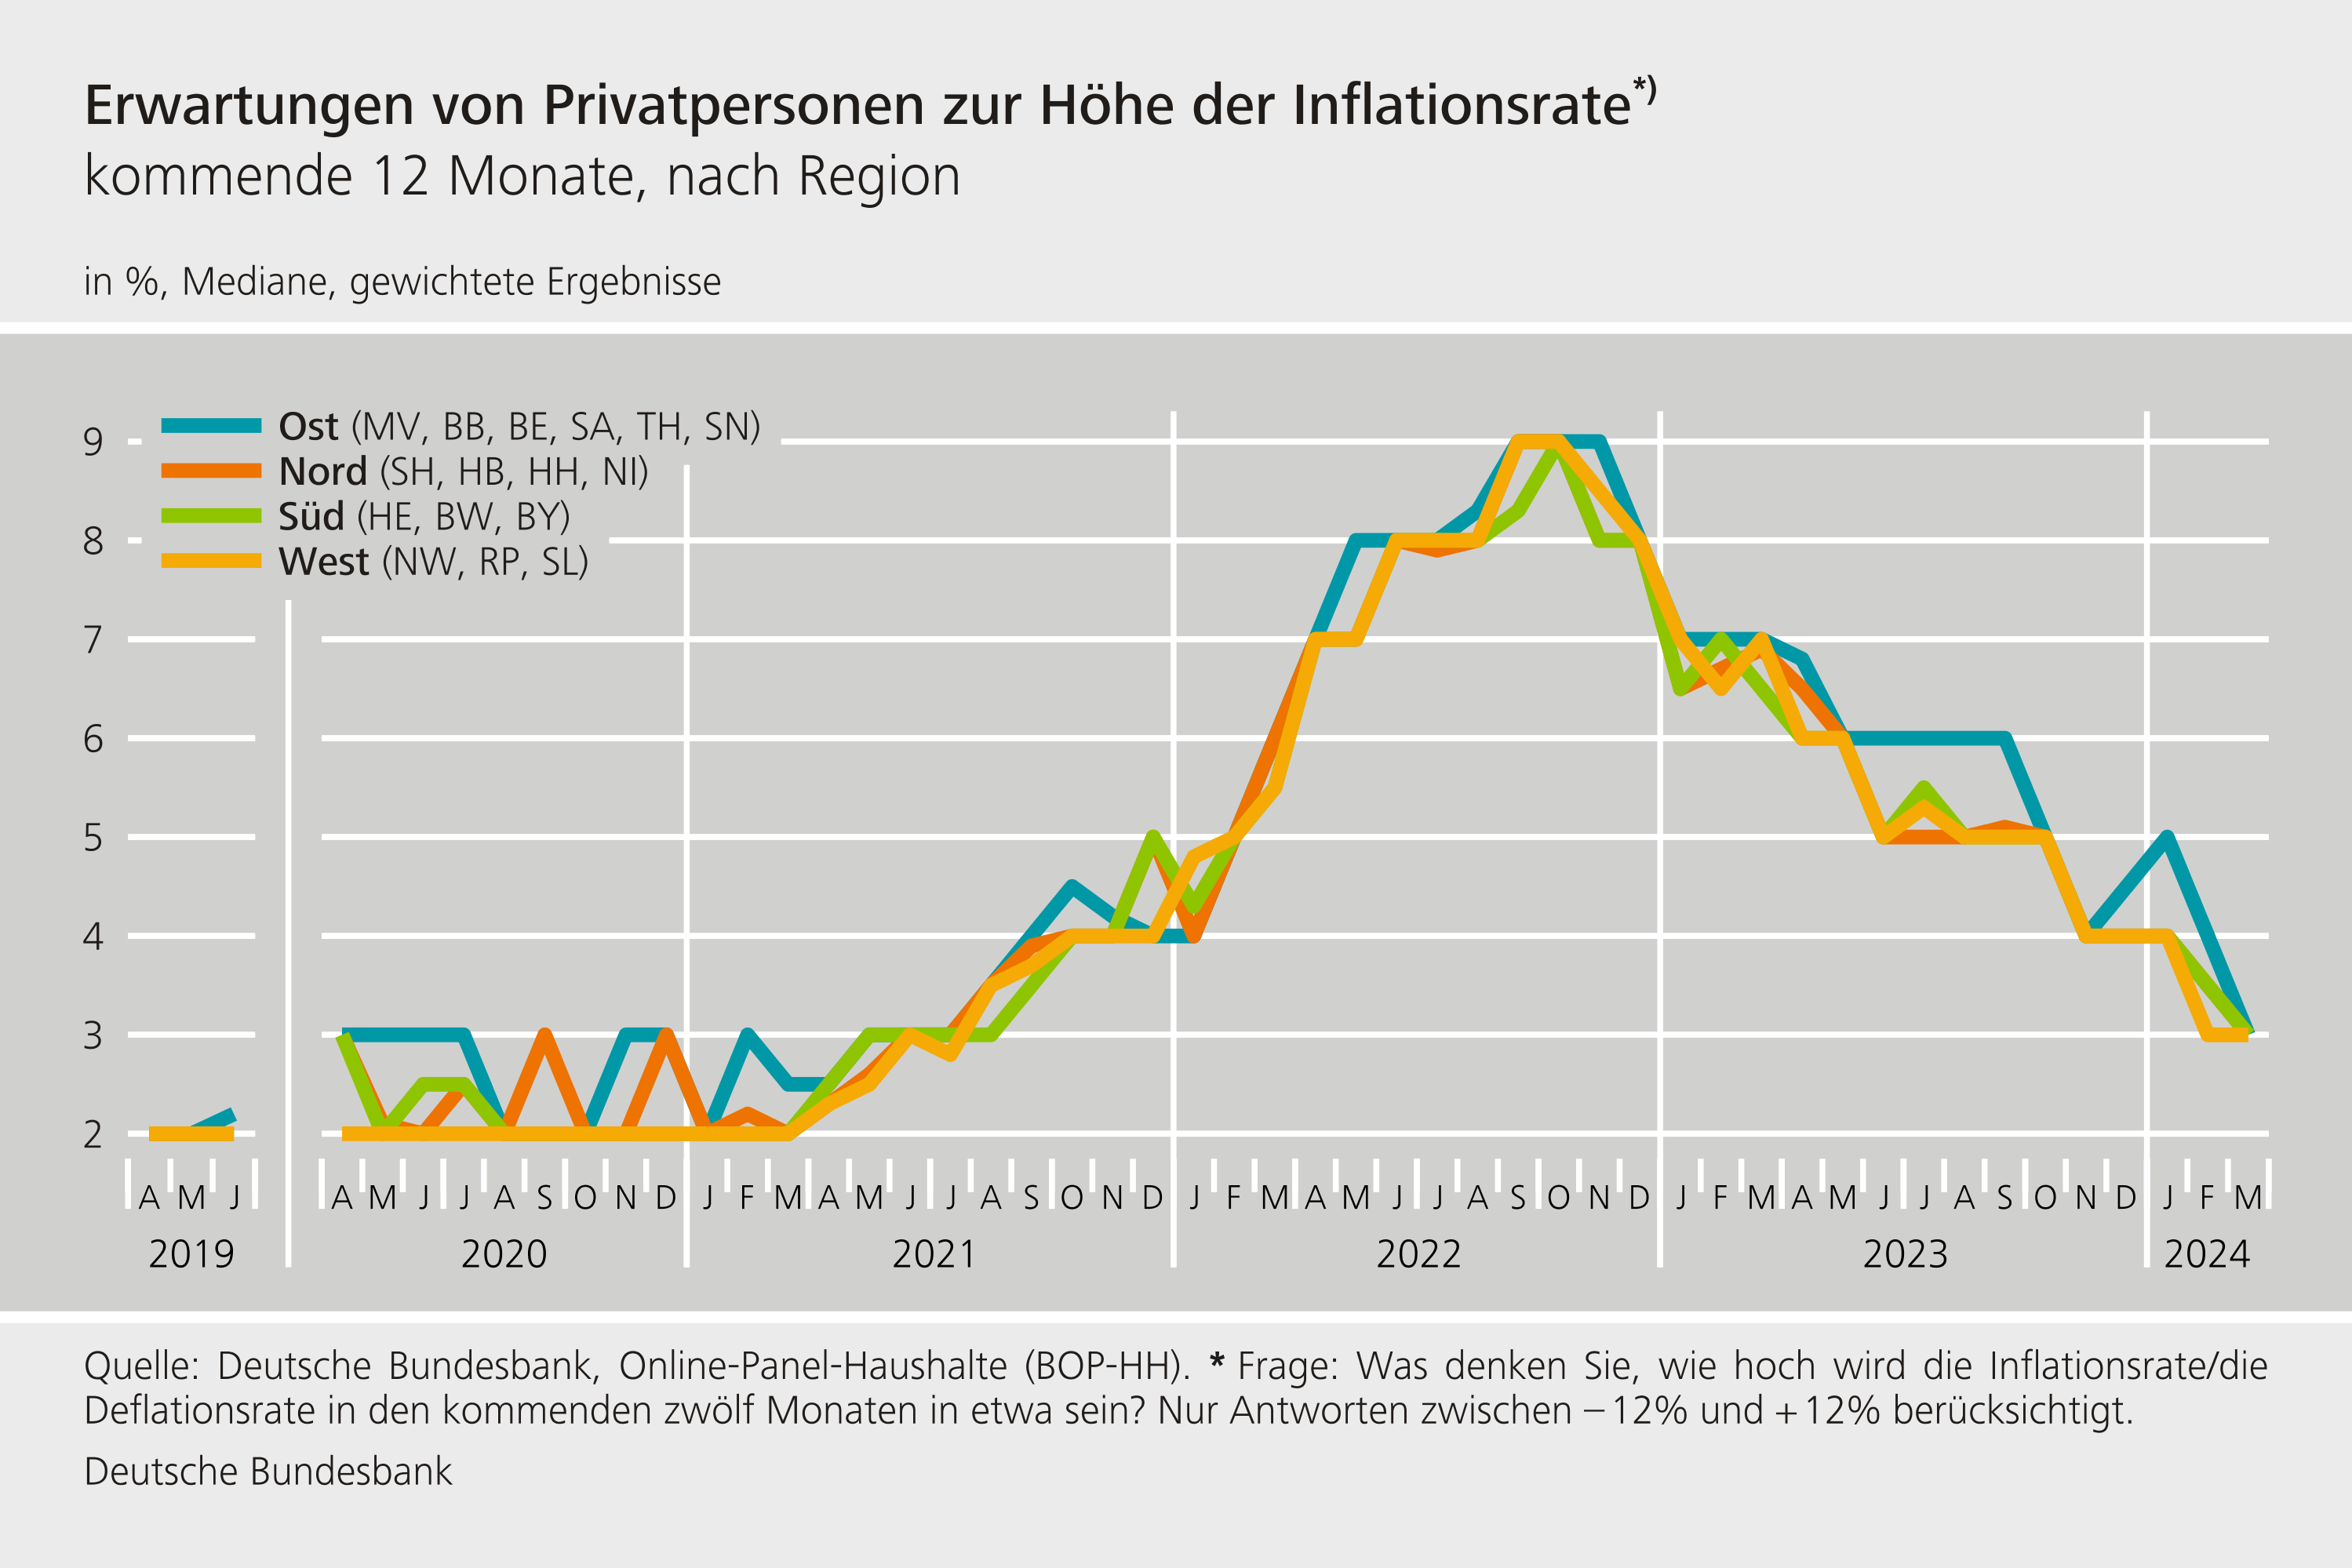 Erwartungen von Privatpersonen zur Höhe der Inflationsrate, nach Region – Mediane